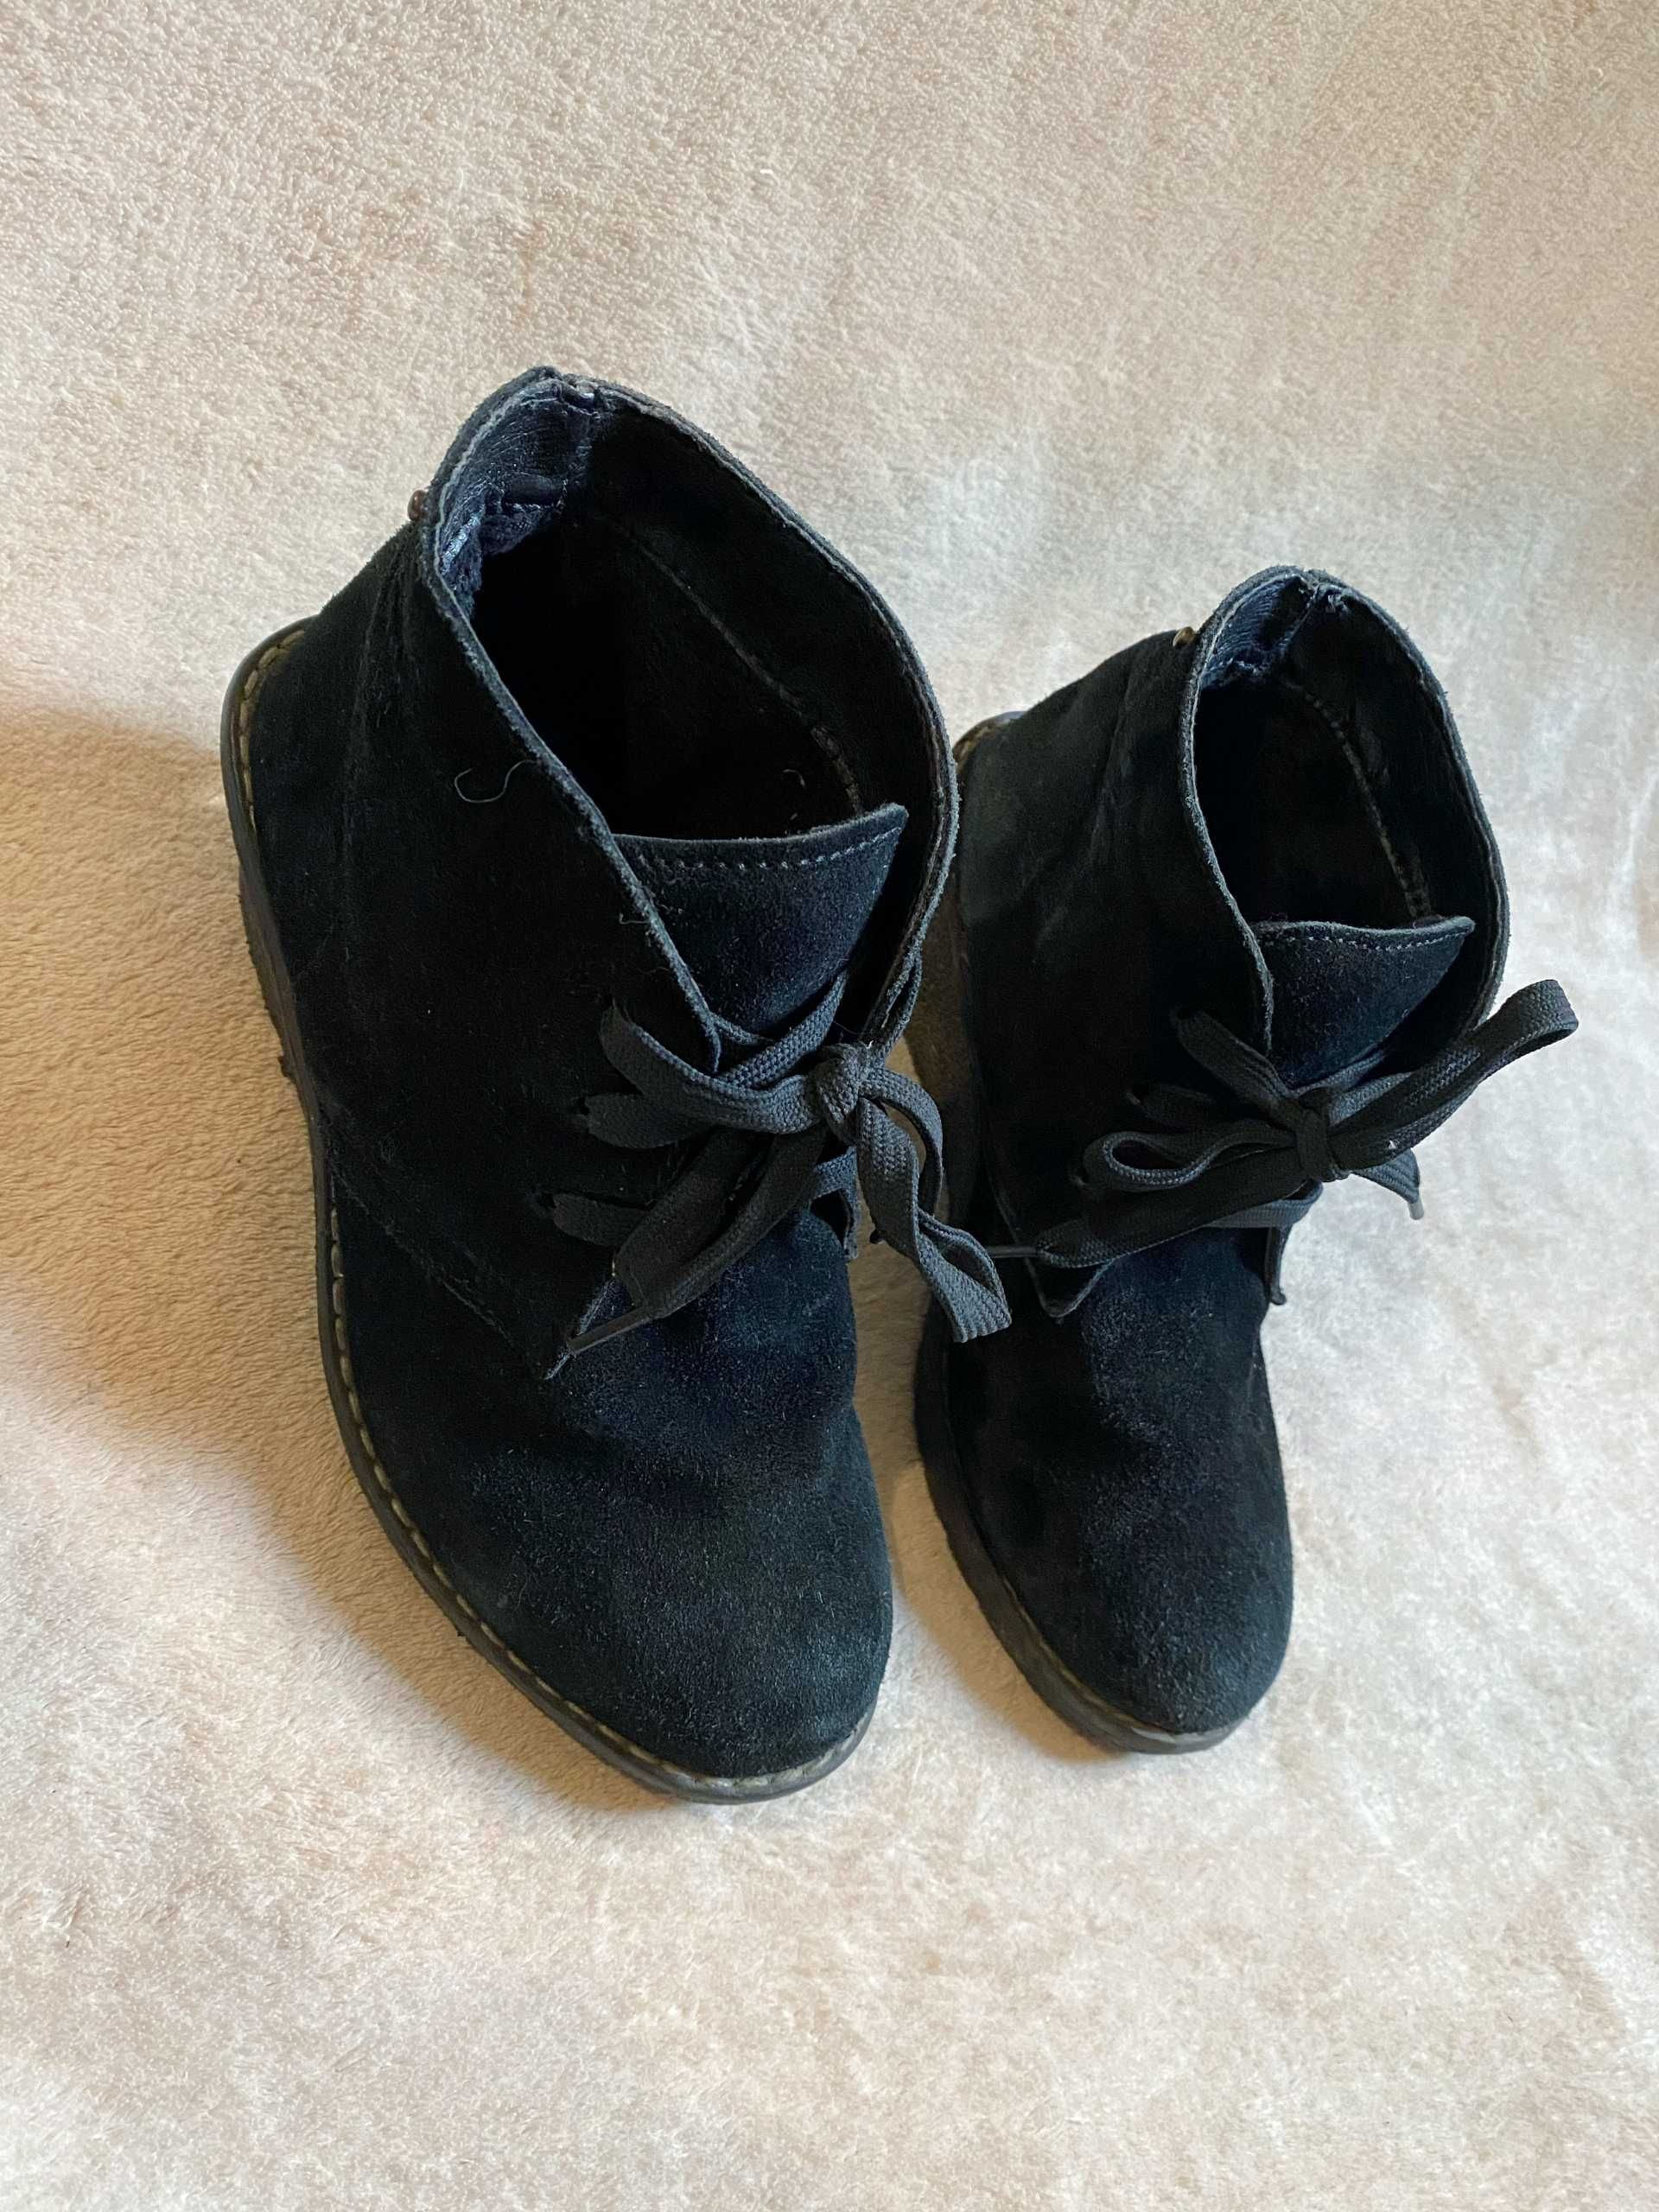 Замшевые зимние ботинки 35 размер